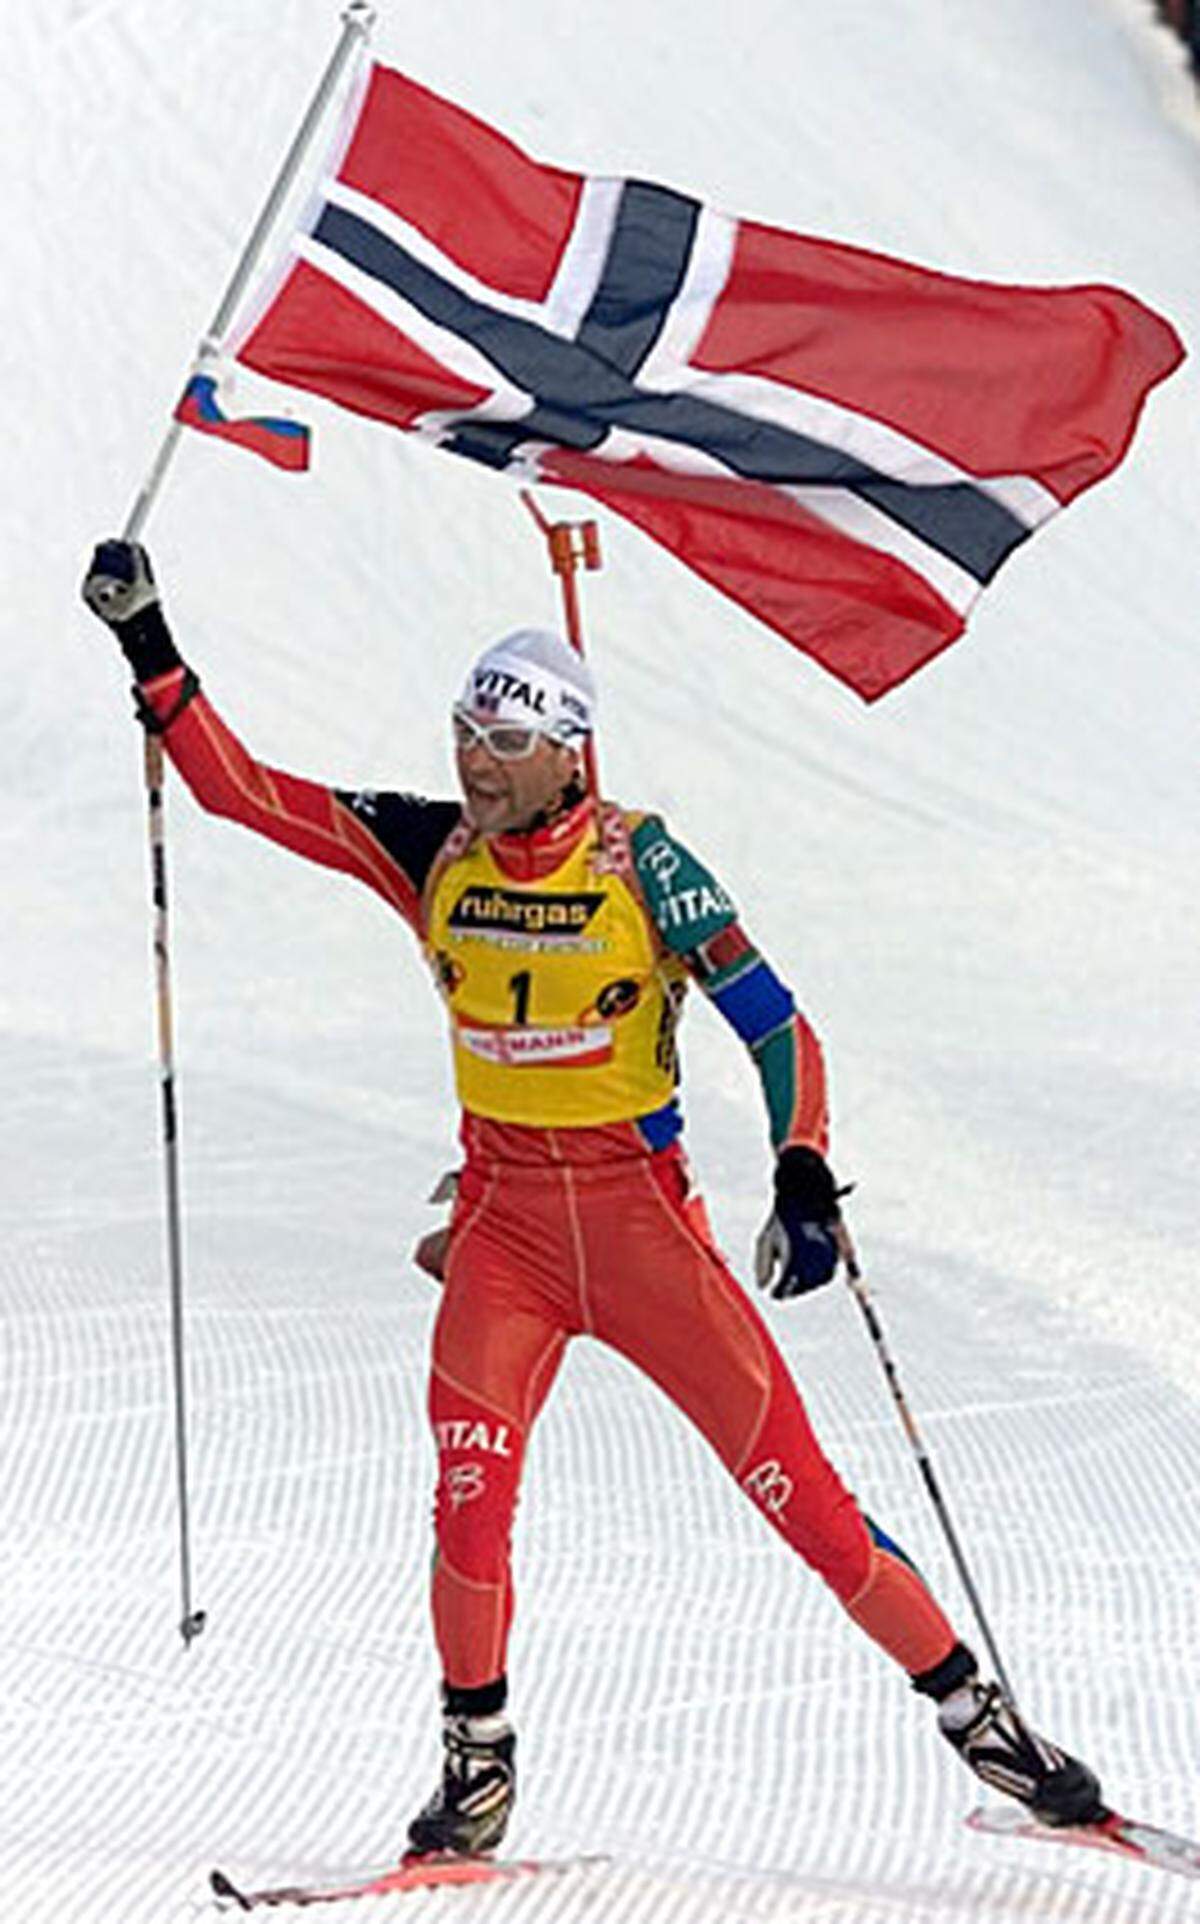 Bei der WM 2003 in Russland im russischen Chanty-Mansijsk bestätigt der Norweger seine Top-Form: Er gewinnt in Sprint und Massenstart seine ersten WM-Einzel-Medaillen in Gold.